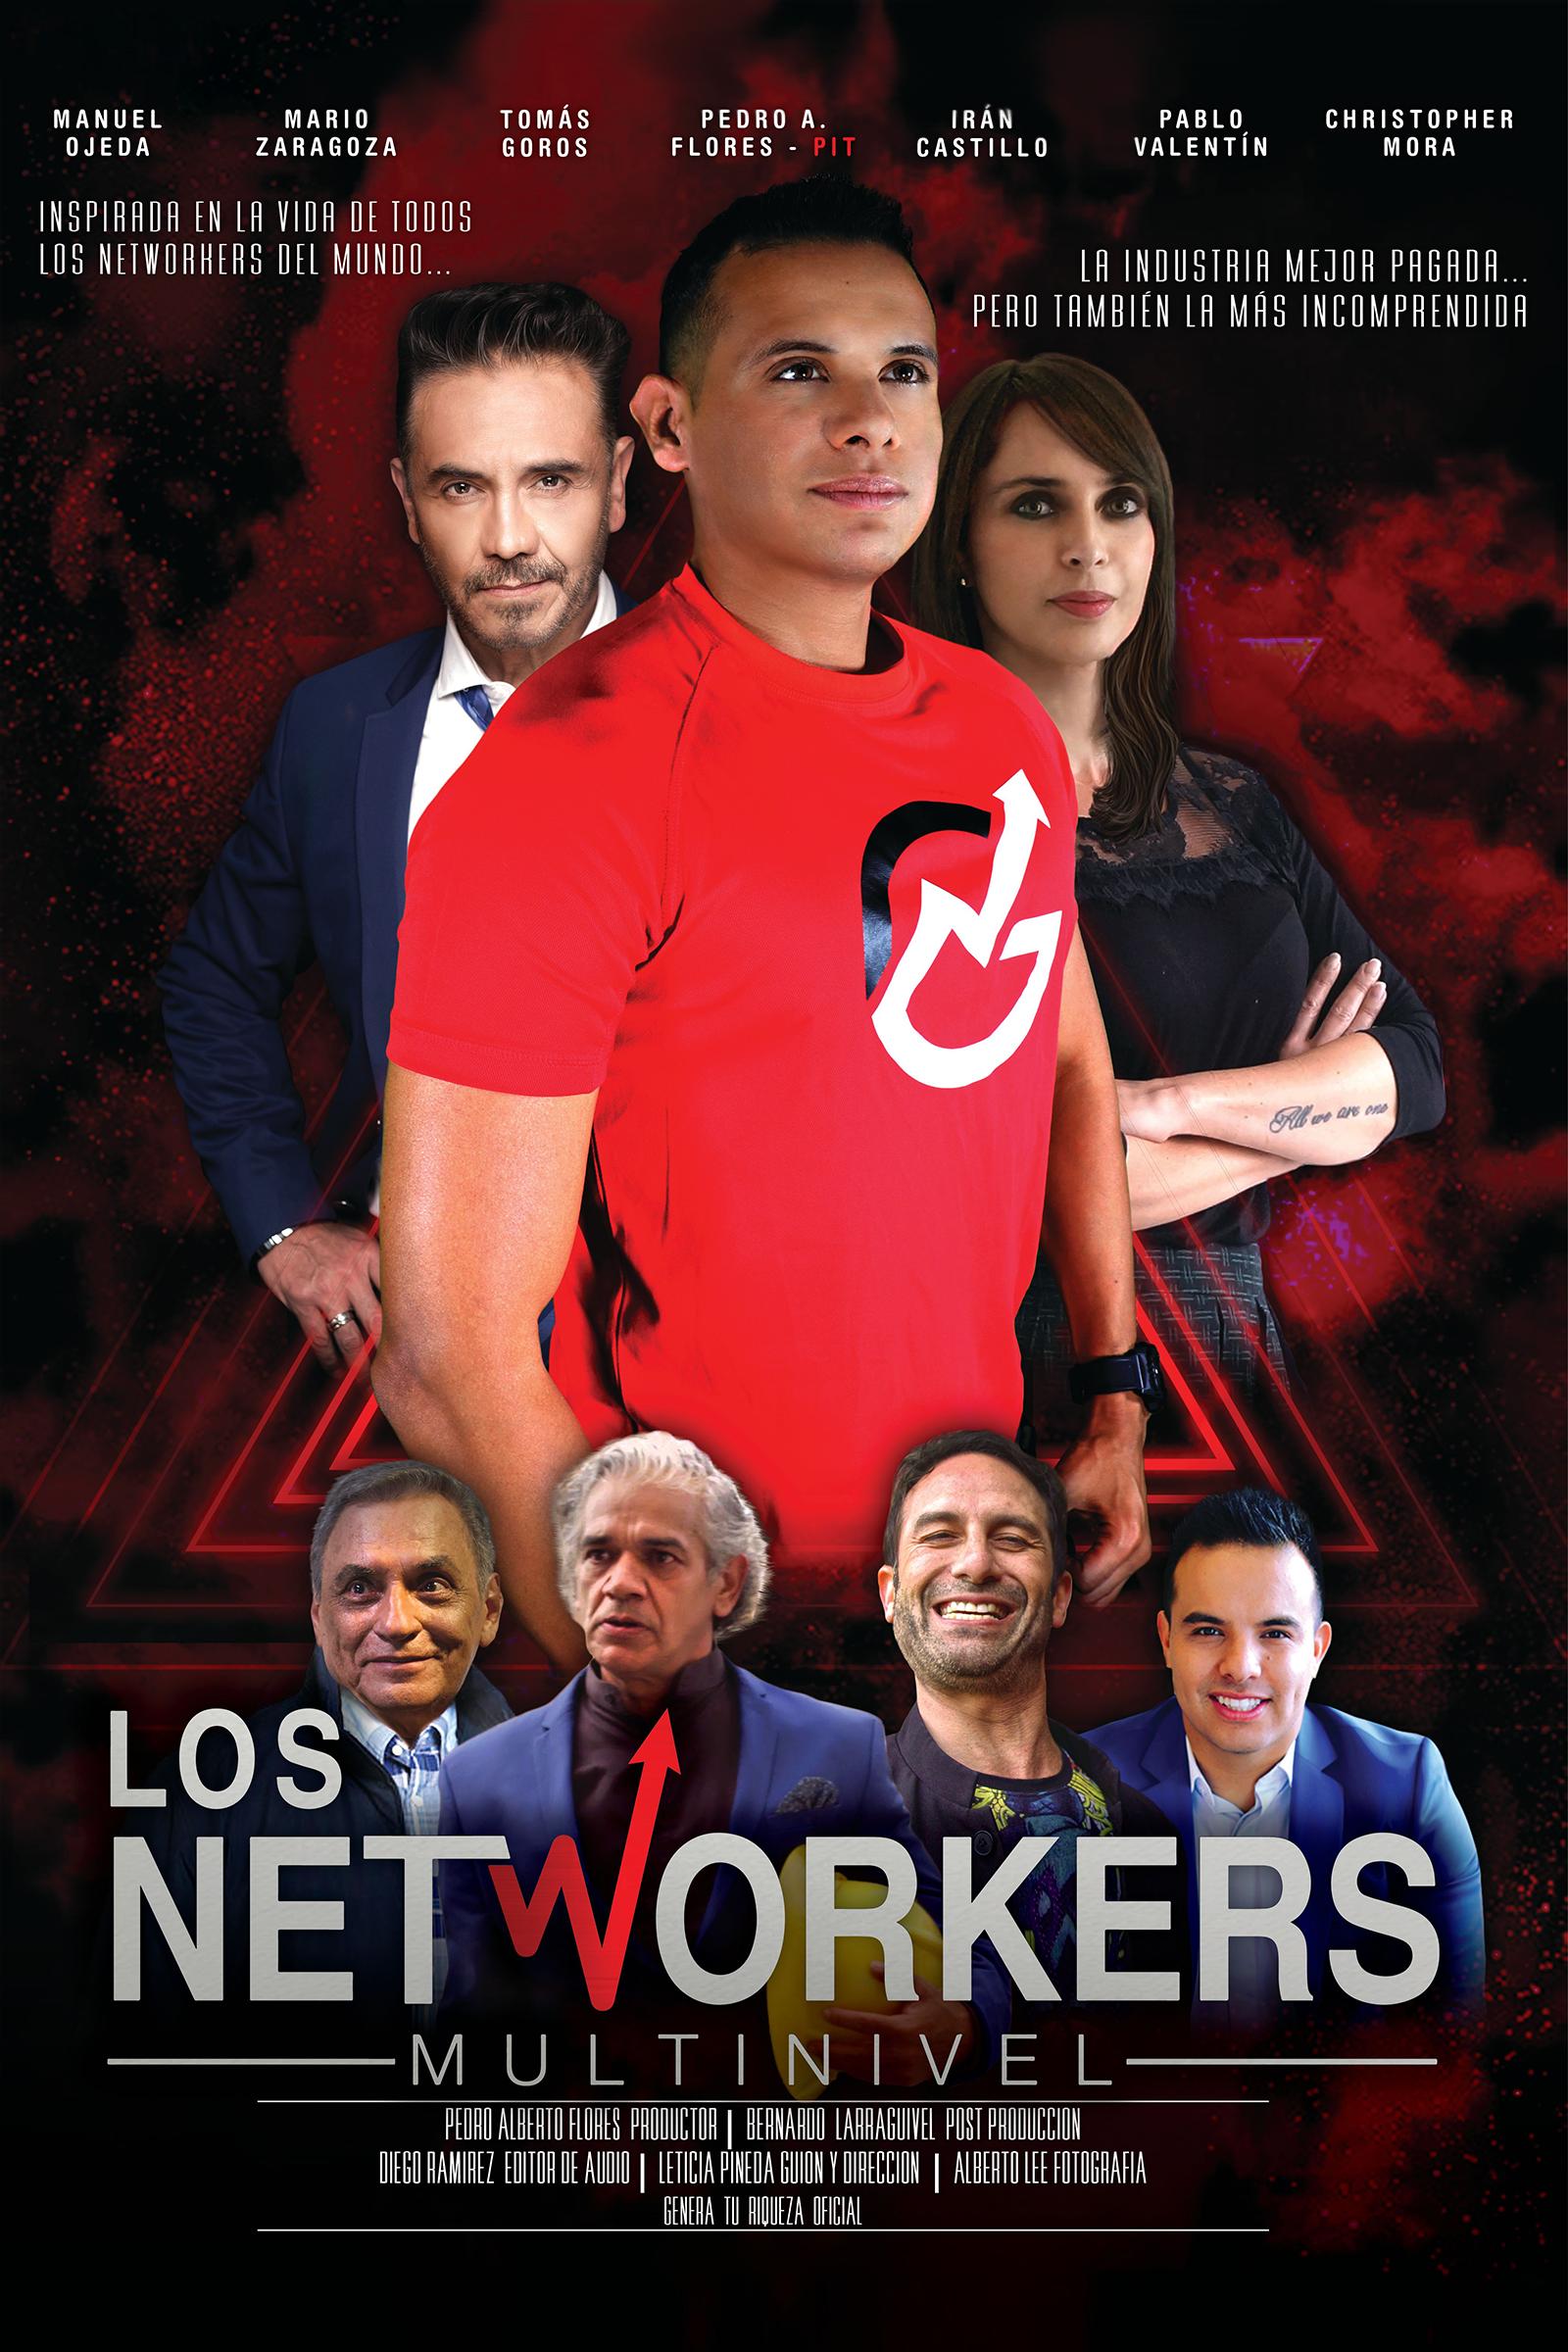 Los Networkers Multinivel (2020) постер